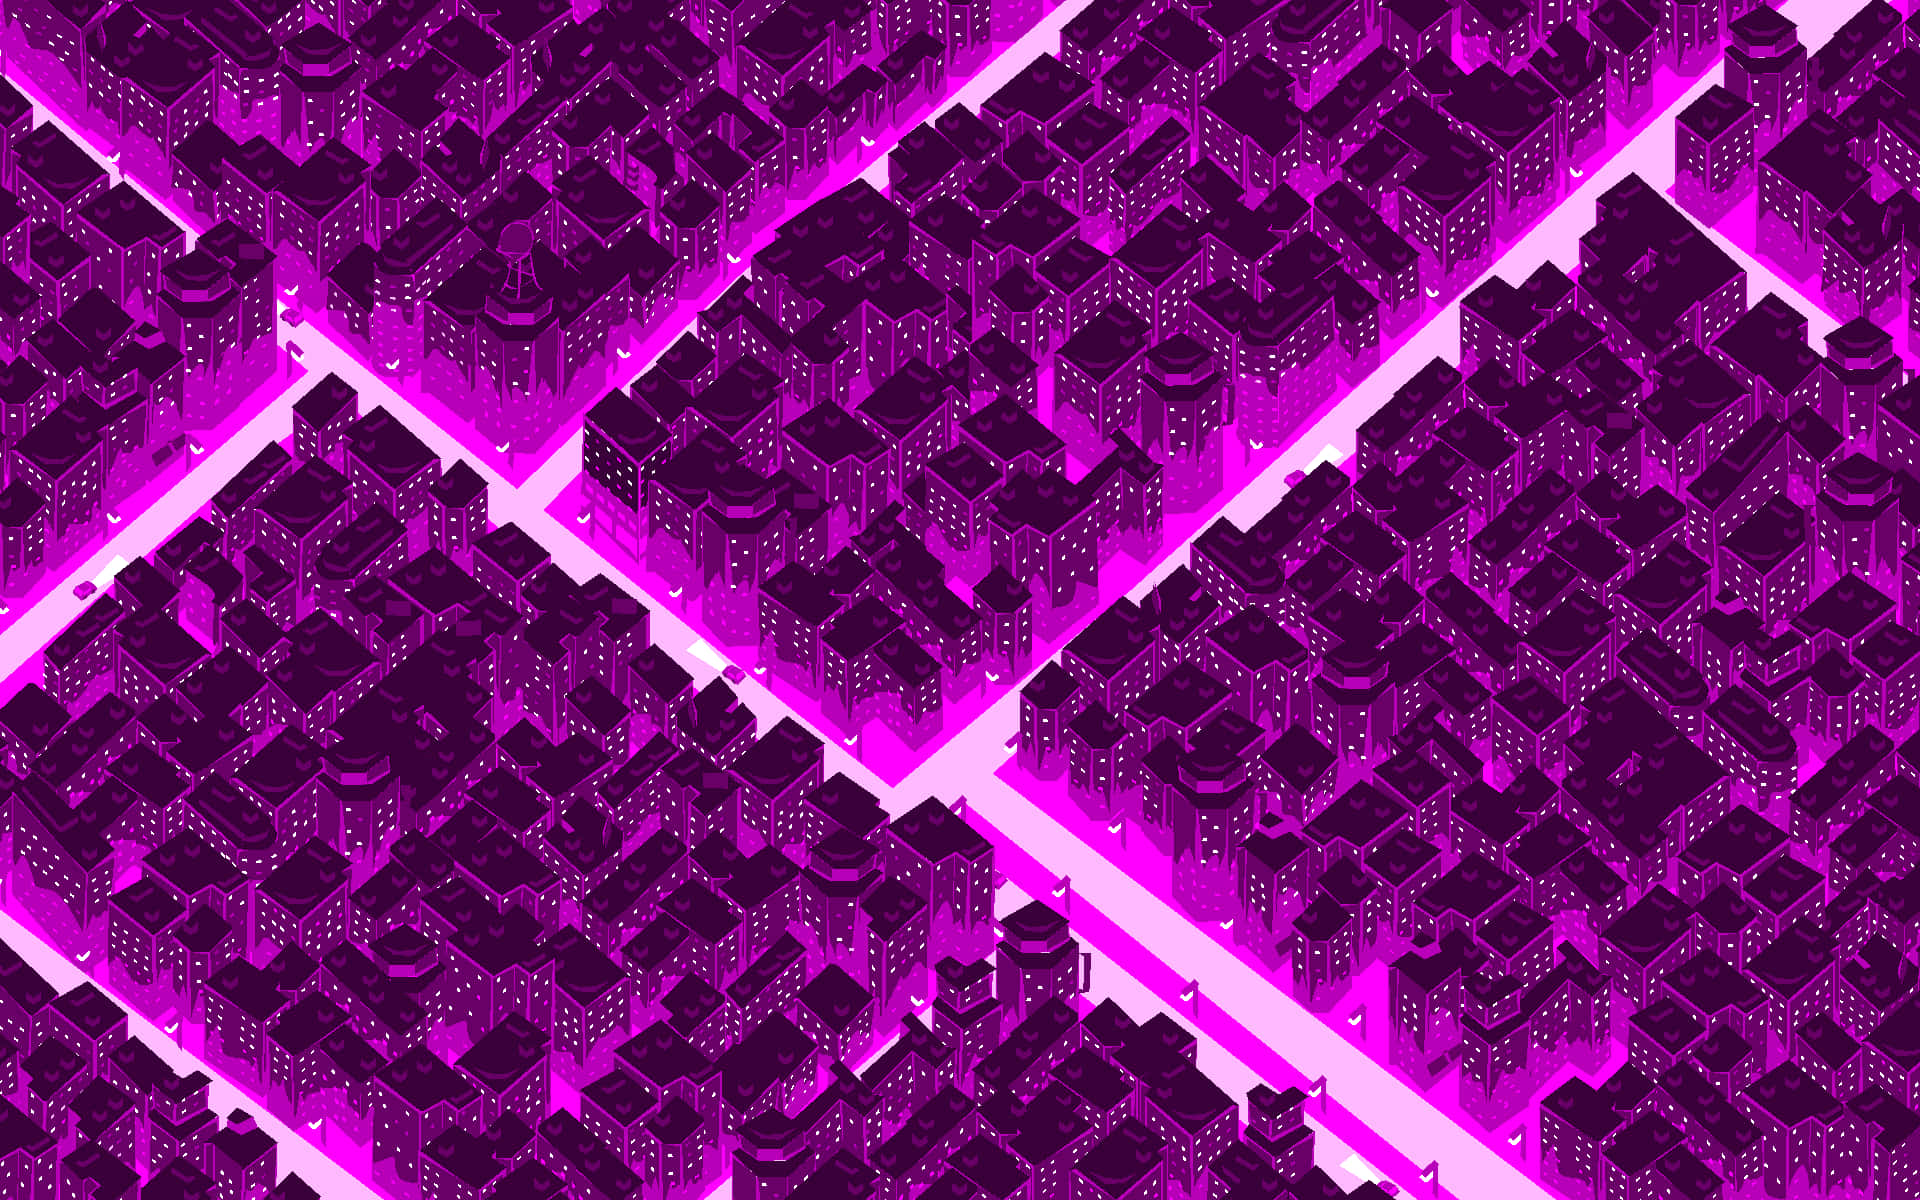 Utforskade Retrofuturistiska Ljusen I Synthwave City Som Dator- Eller Mobilbakgrund. Wallpaper